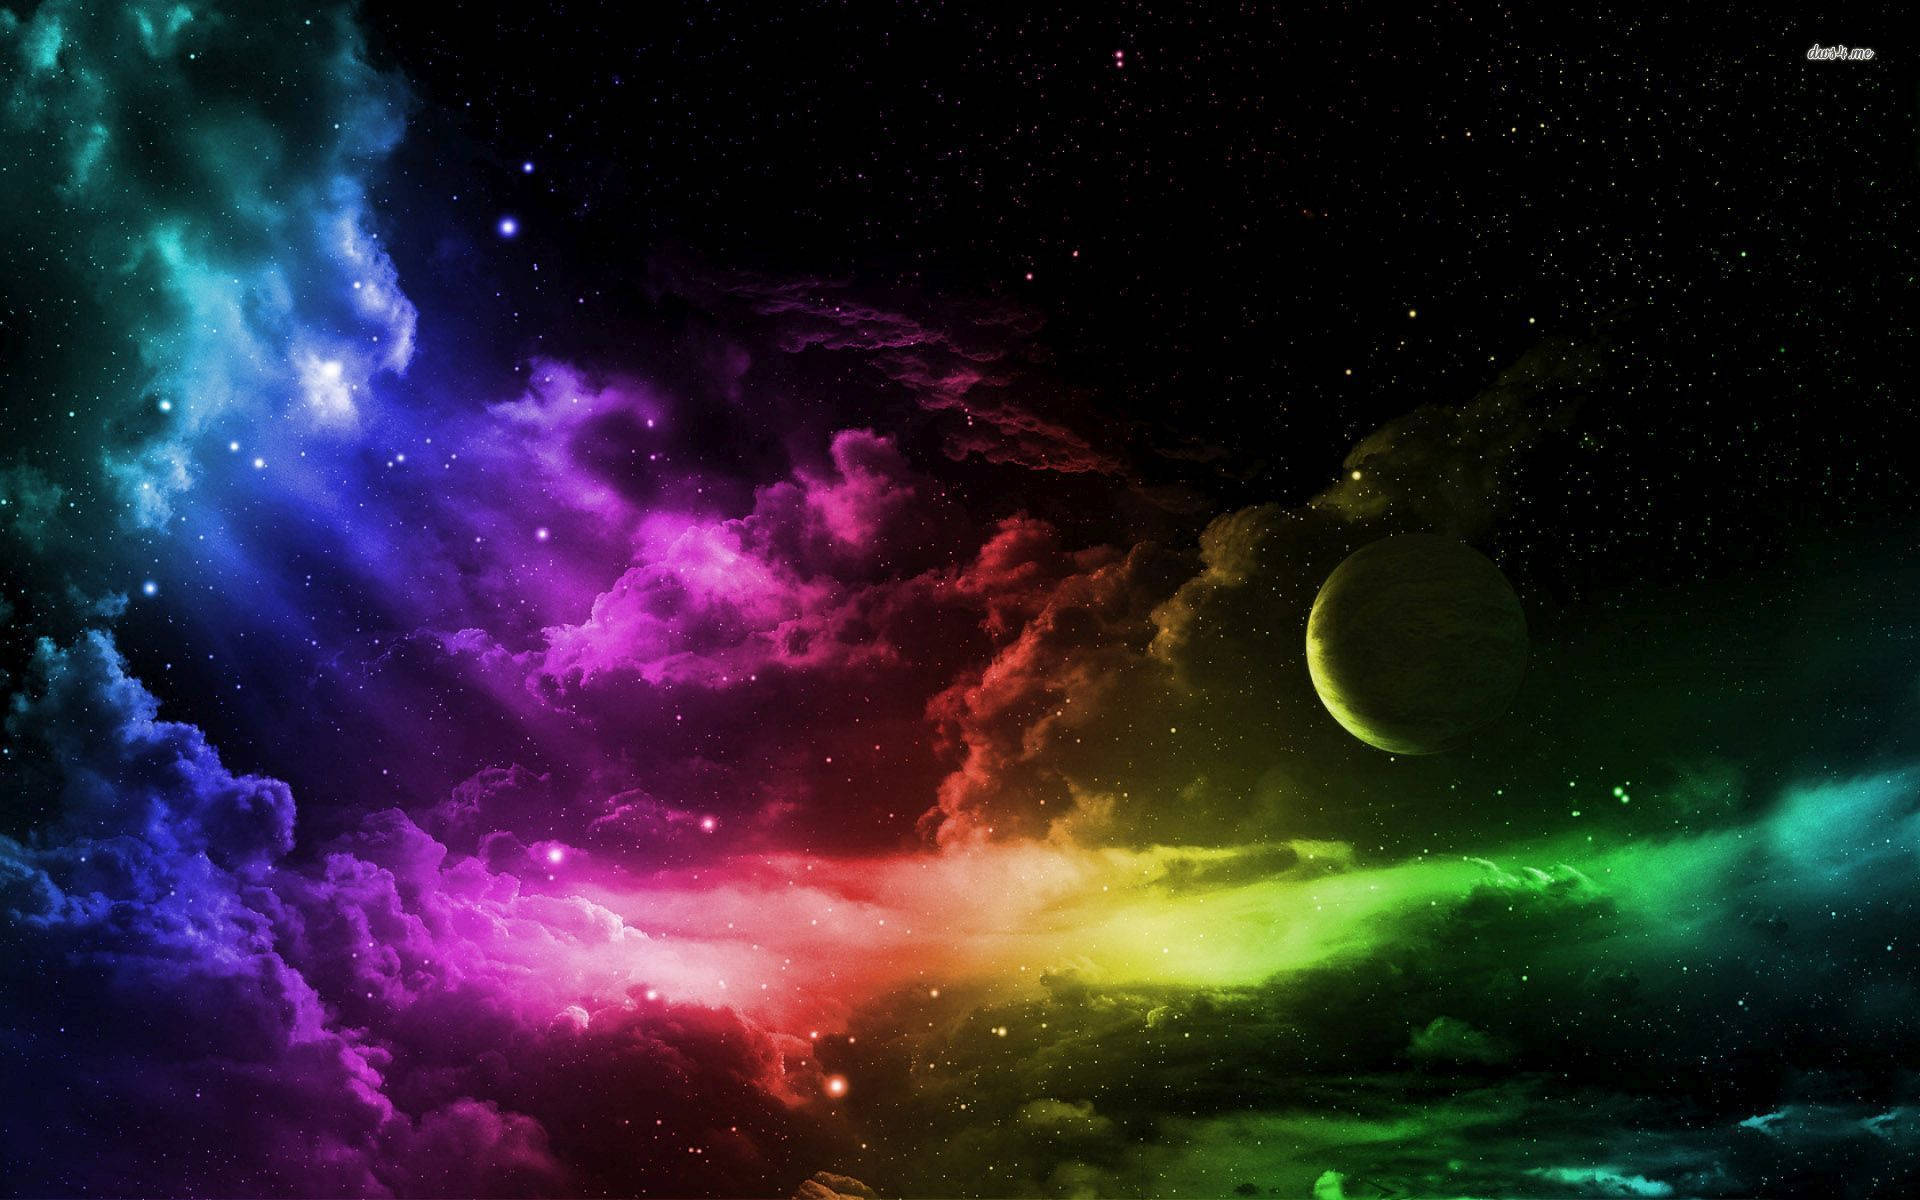 Mystical Full Moon In A Rainbow Galaxy